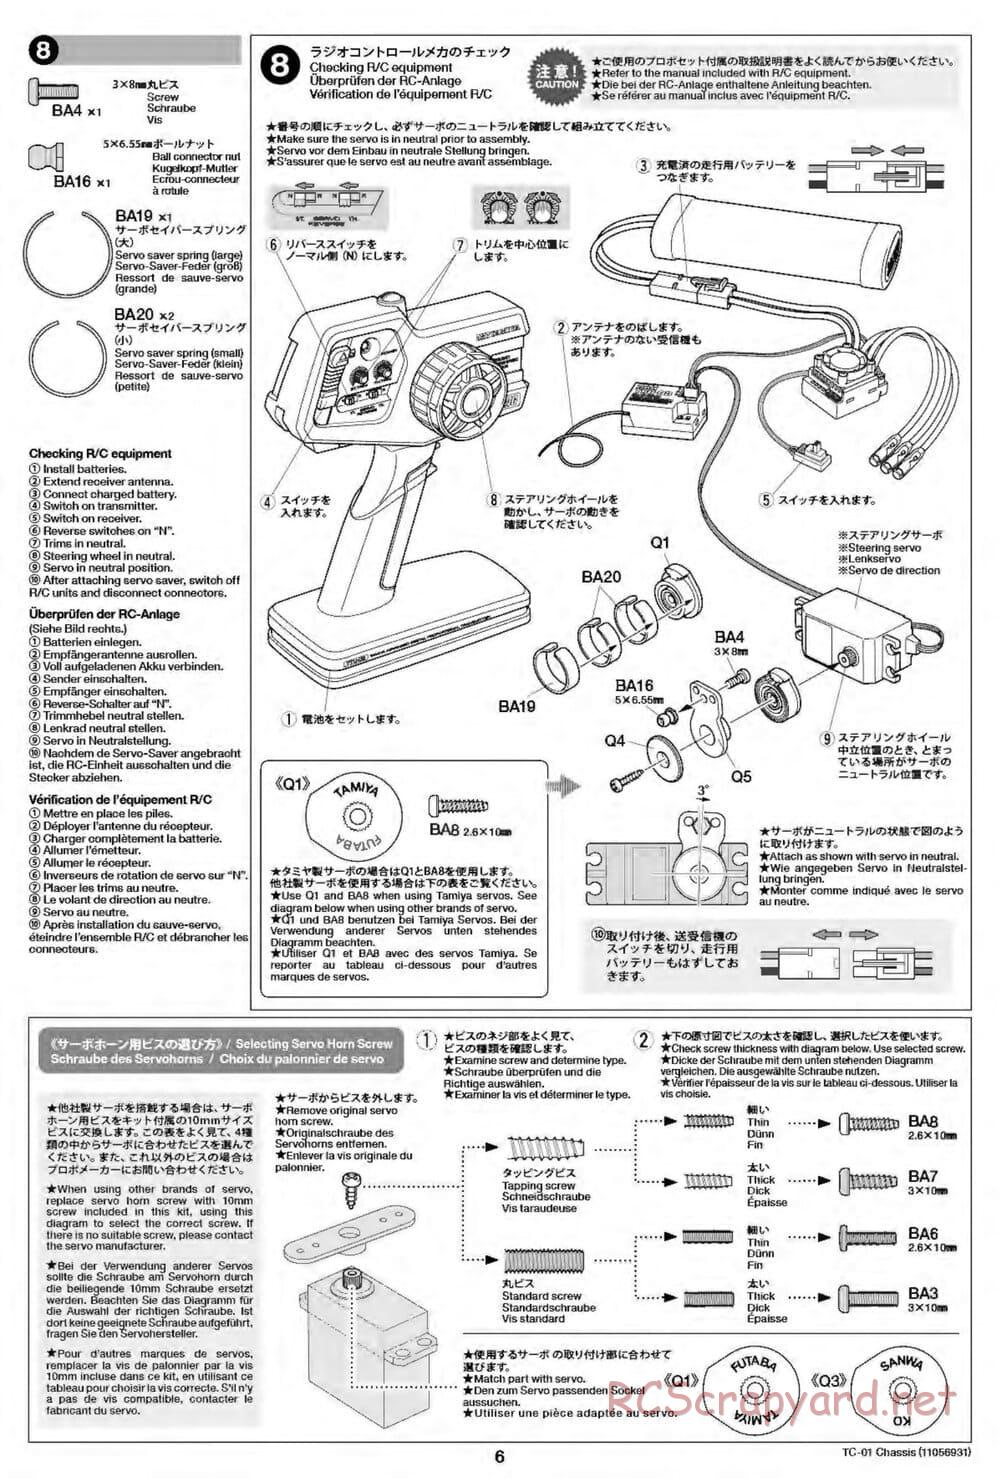 Tamiya - TC-01 Chassis - Manual - Page 6